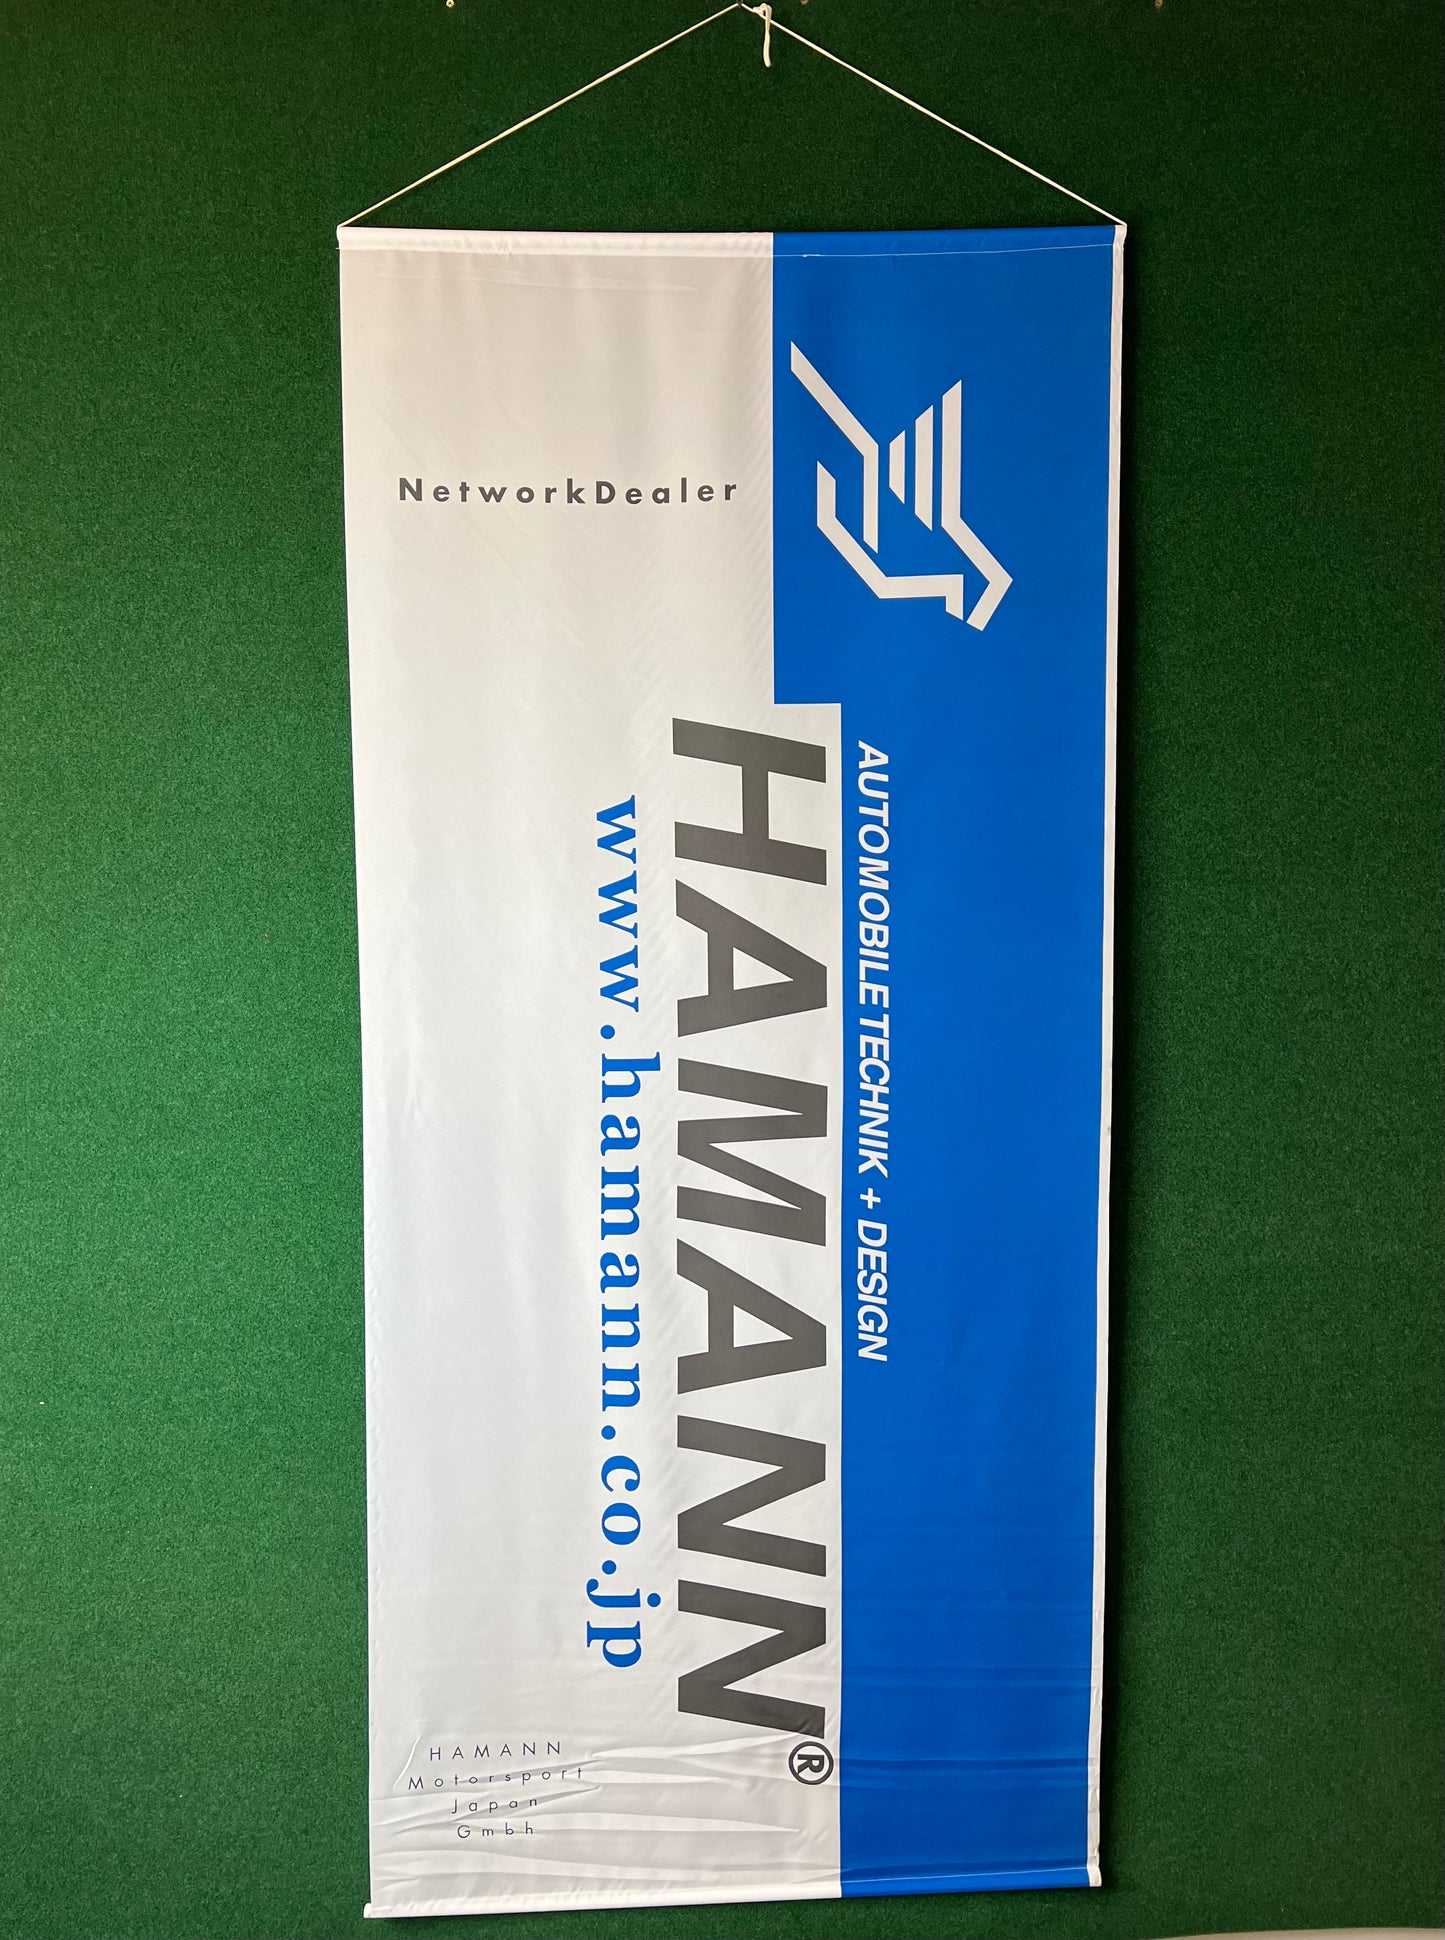 HAMANN Motorsport Japan - Official Network Dealer Large Banner